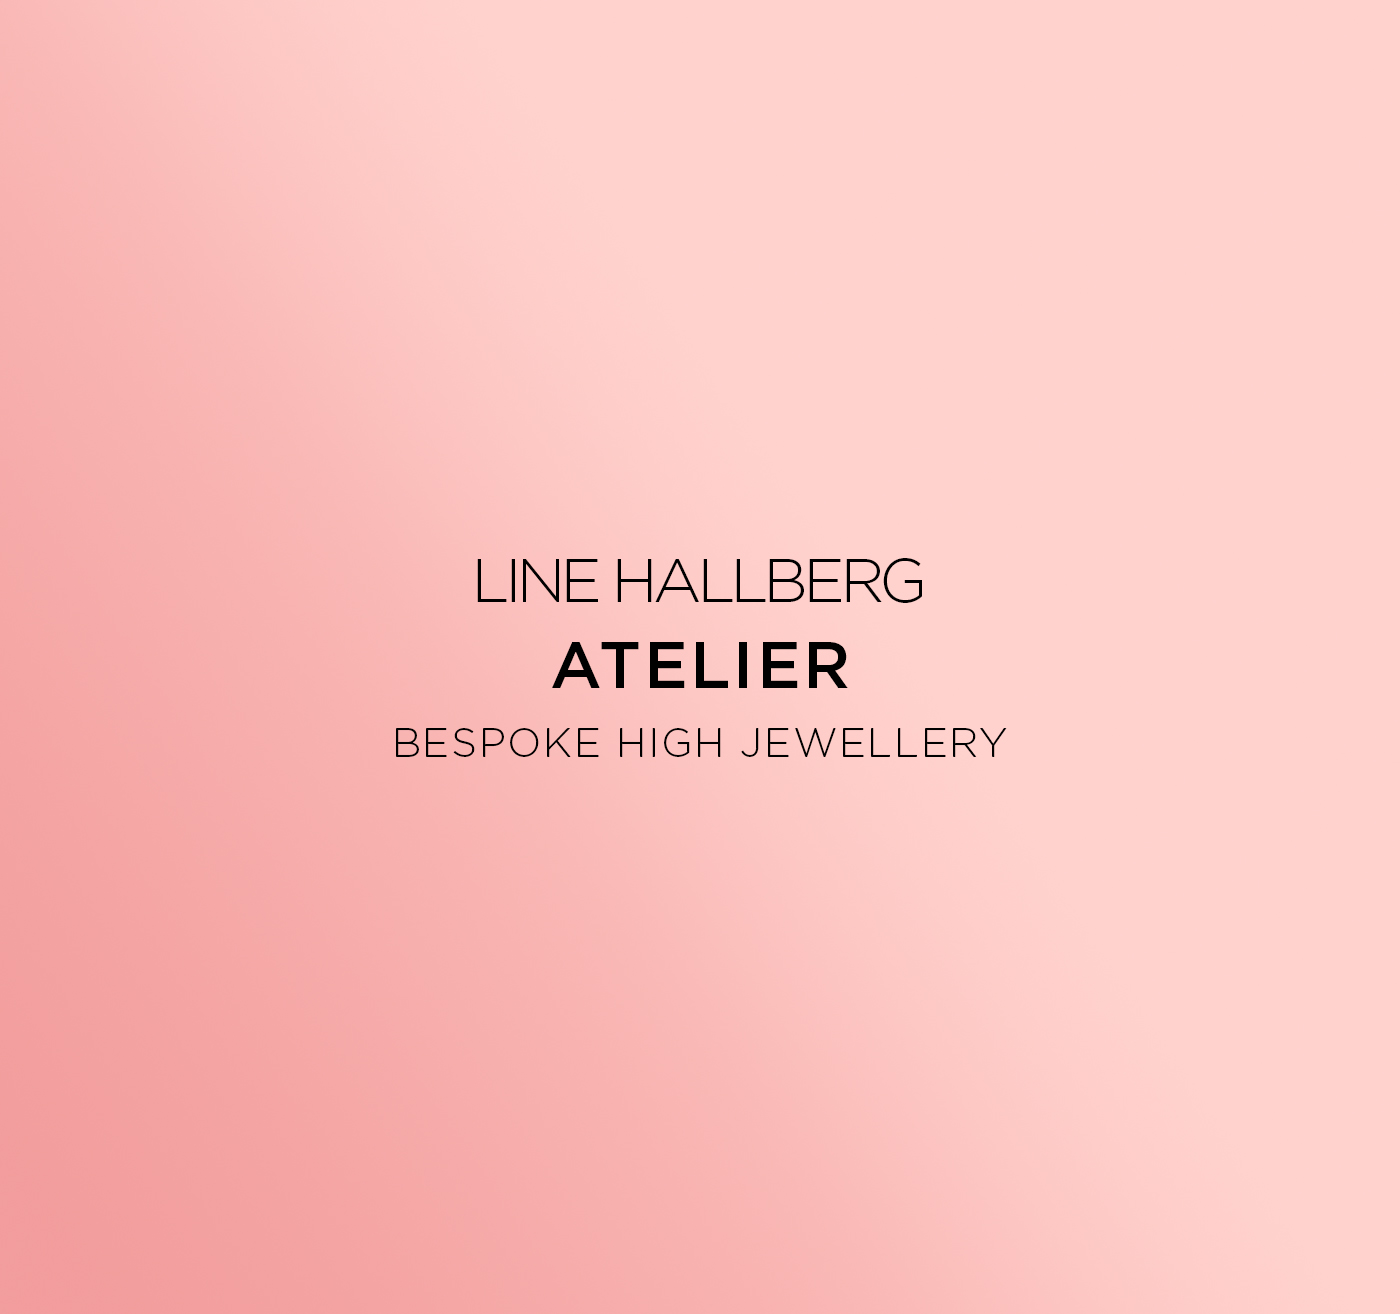 Line Hallberg Atelier